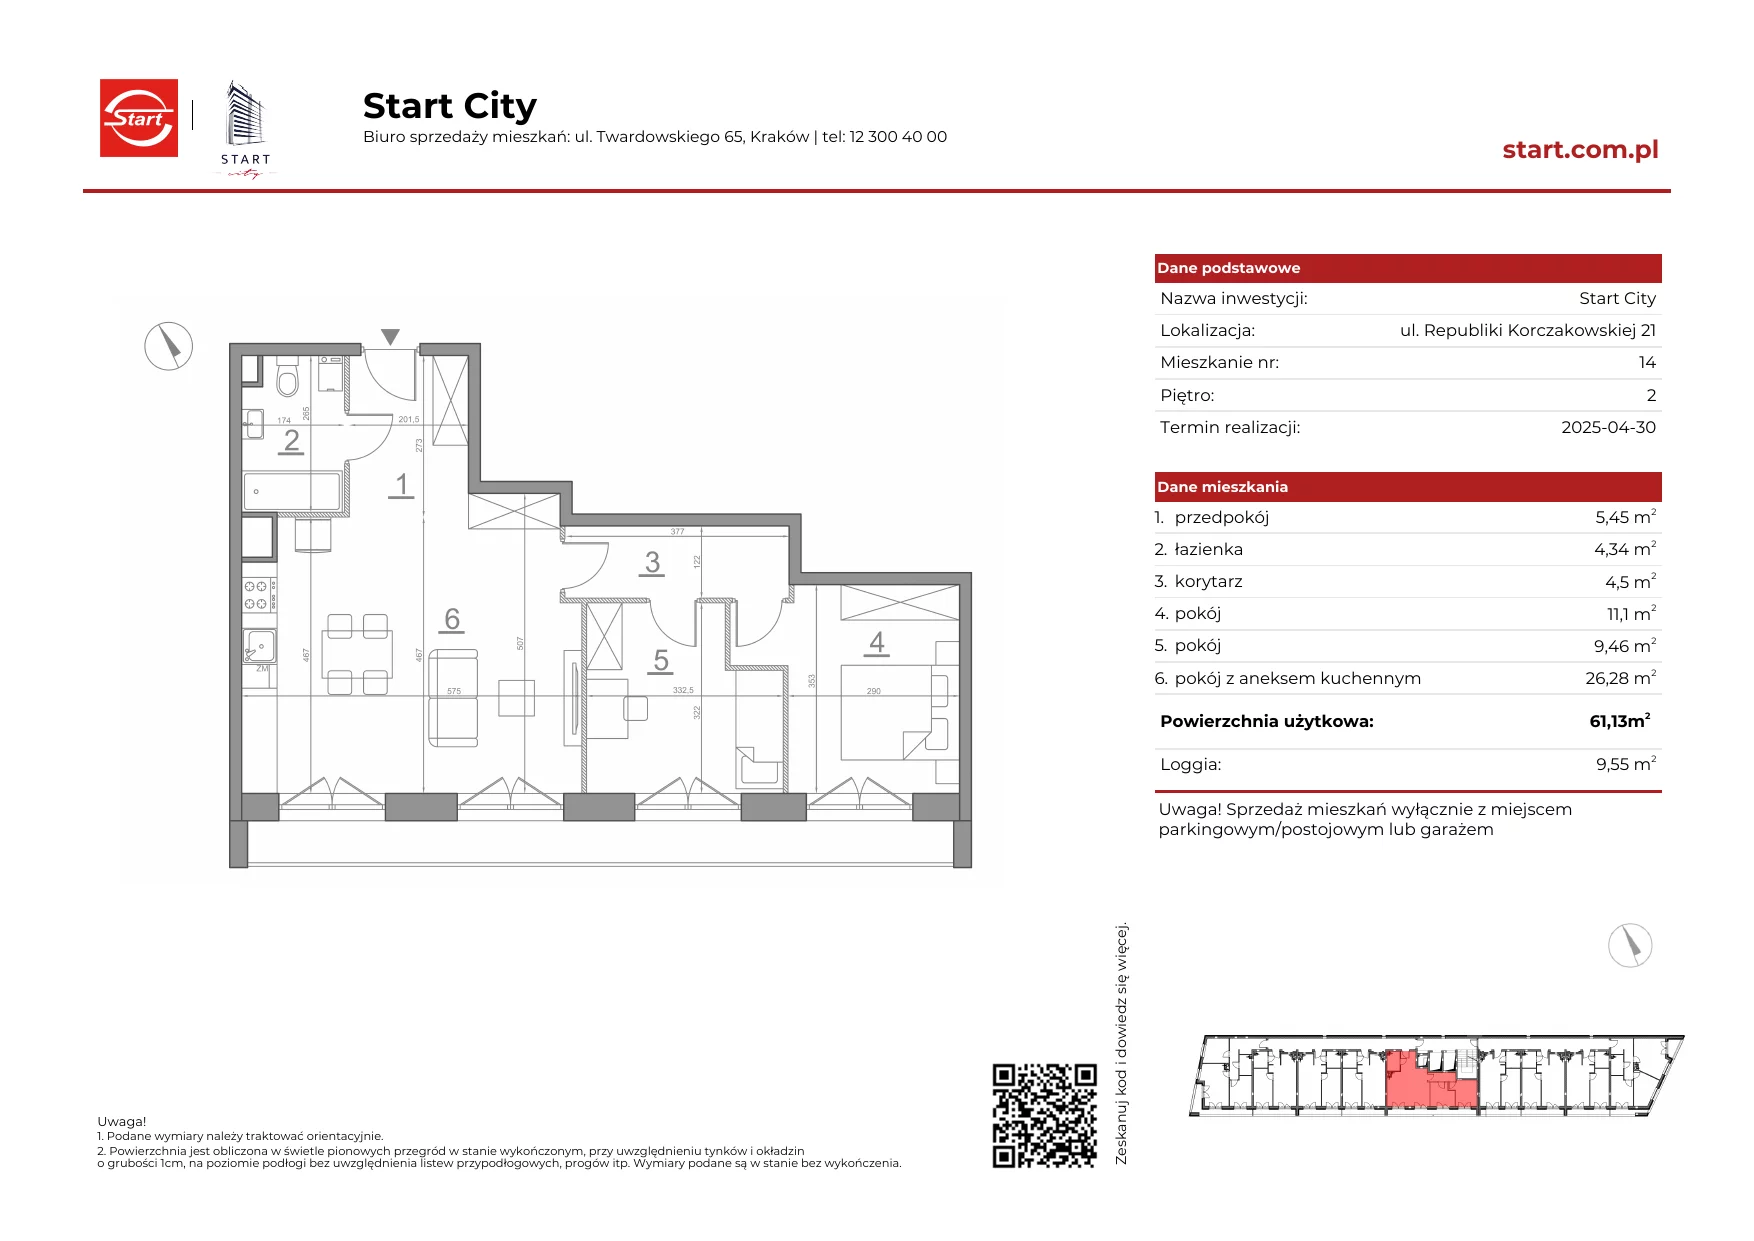 Mieszkanie 61,13 m², piętro 2, oferta nr 21/14, Start City, Kraków, Bieżanów-Prokocim, ul. Republiki Korczakowskiej 21